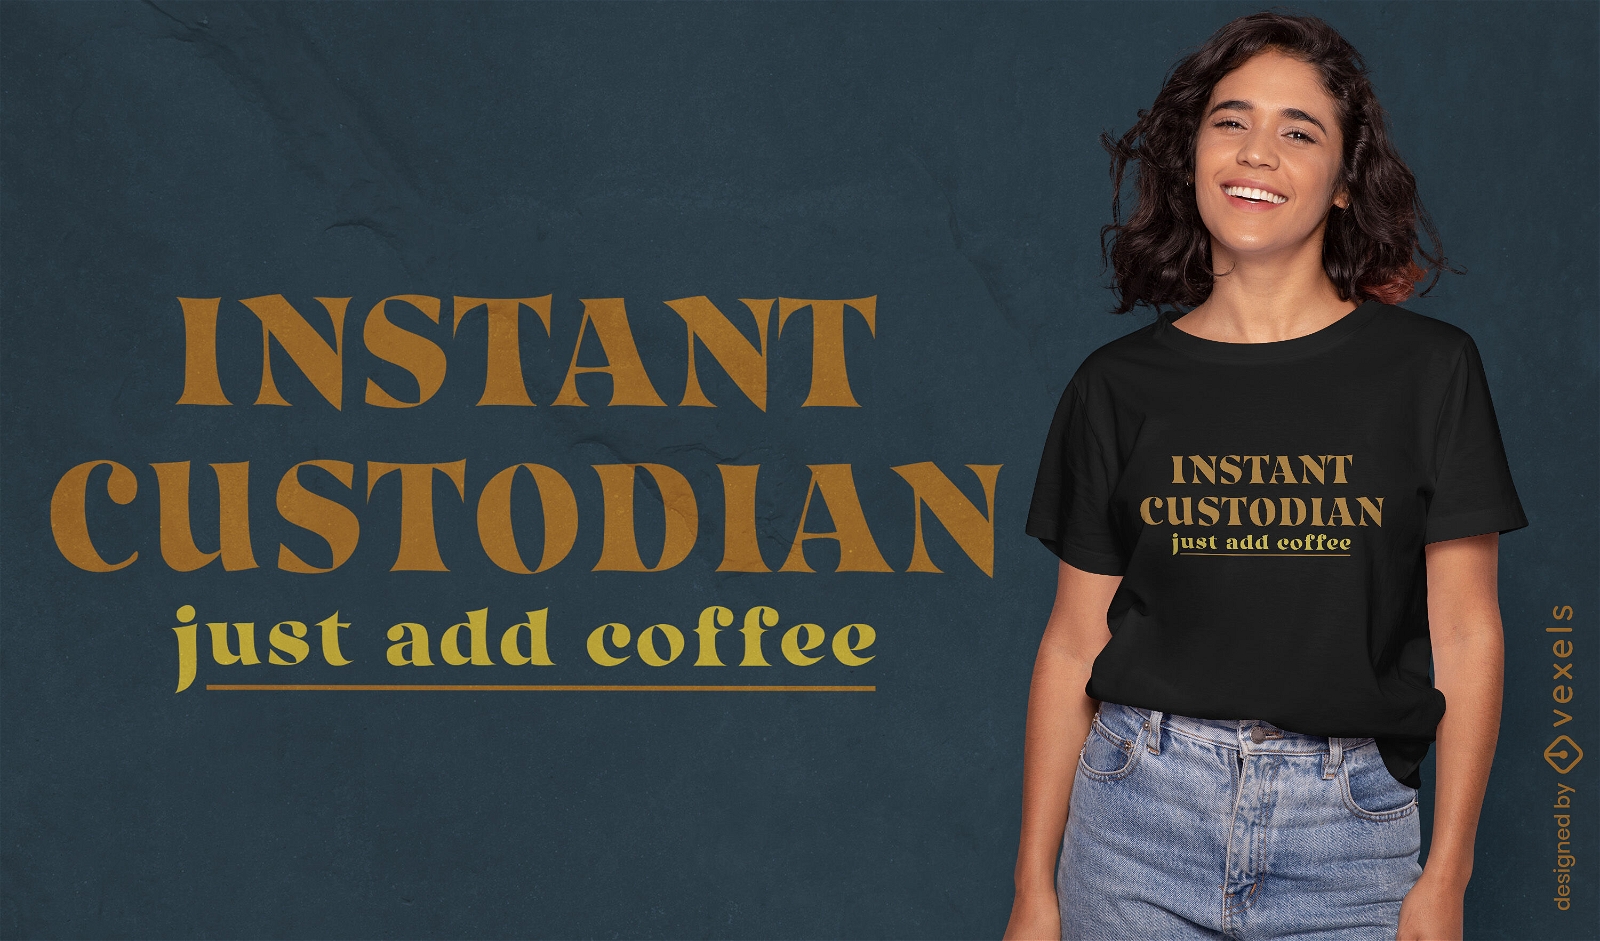 Design instantâneo de camiseta com humor para custódia